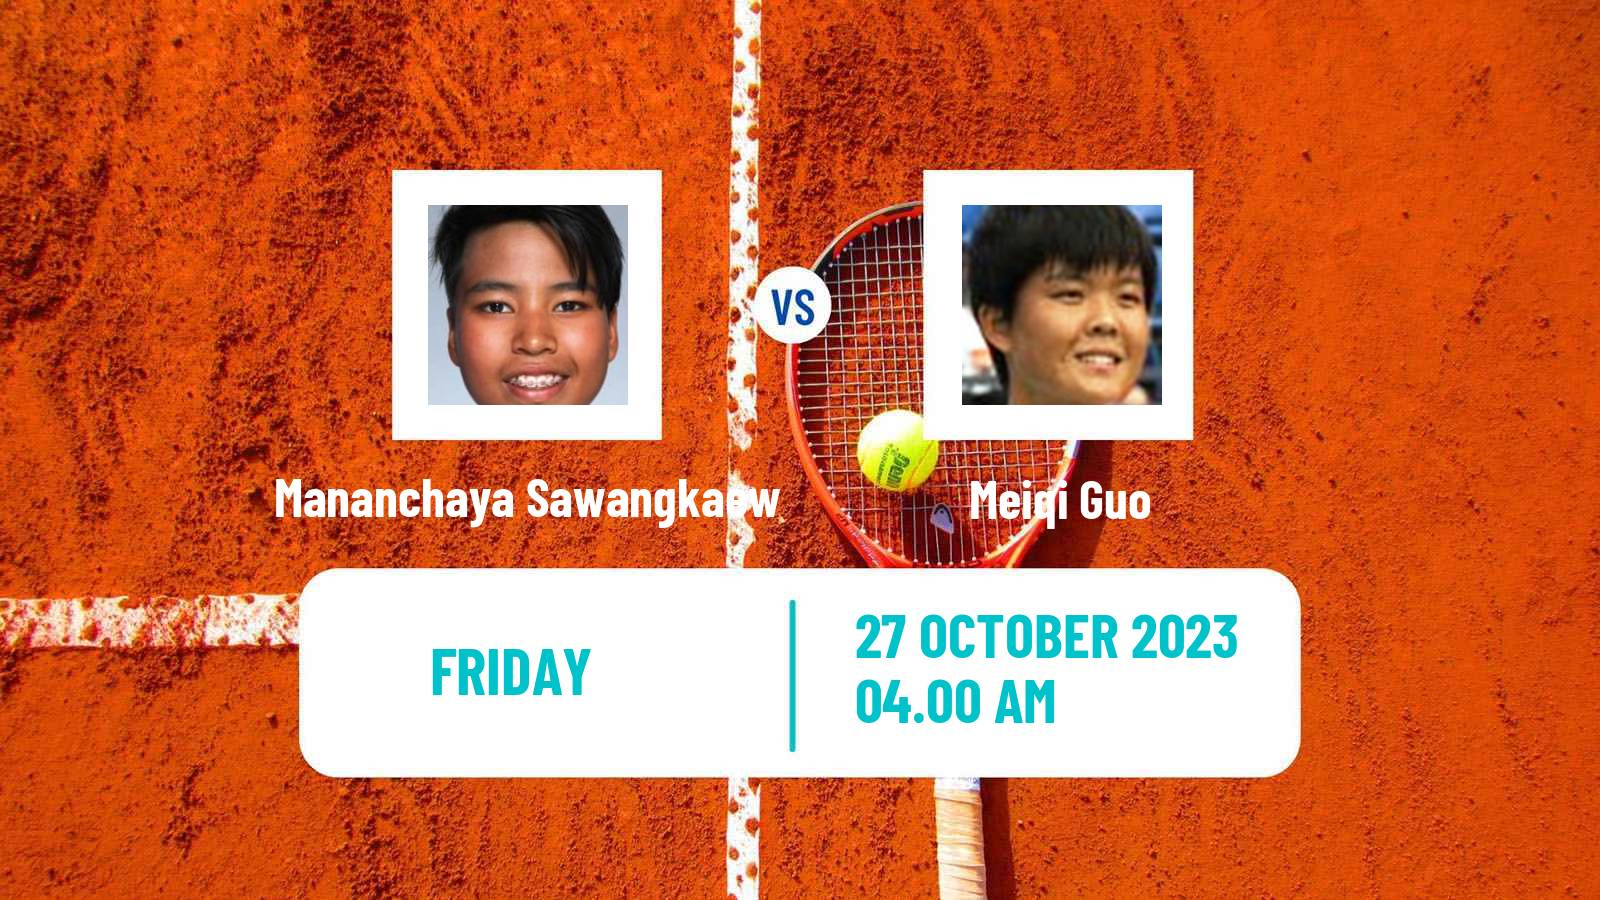 Tennis ITF W25 Qian Daohu Women Mananchaya Sawangkaew - Meiqi Guo